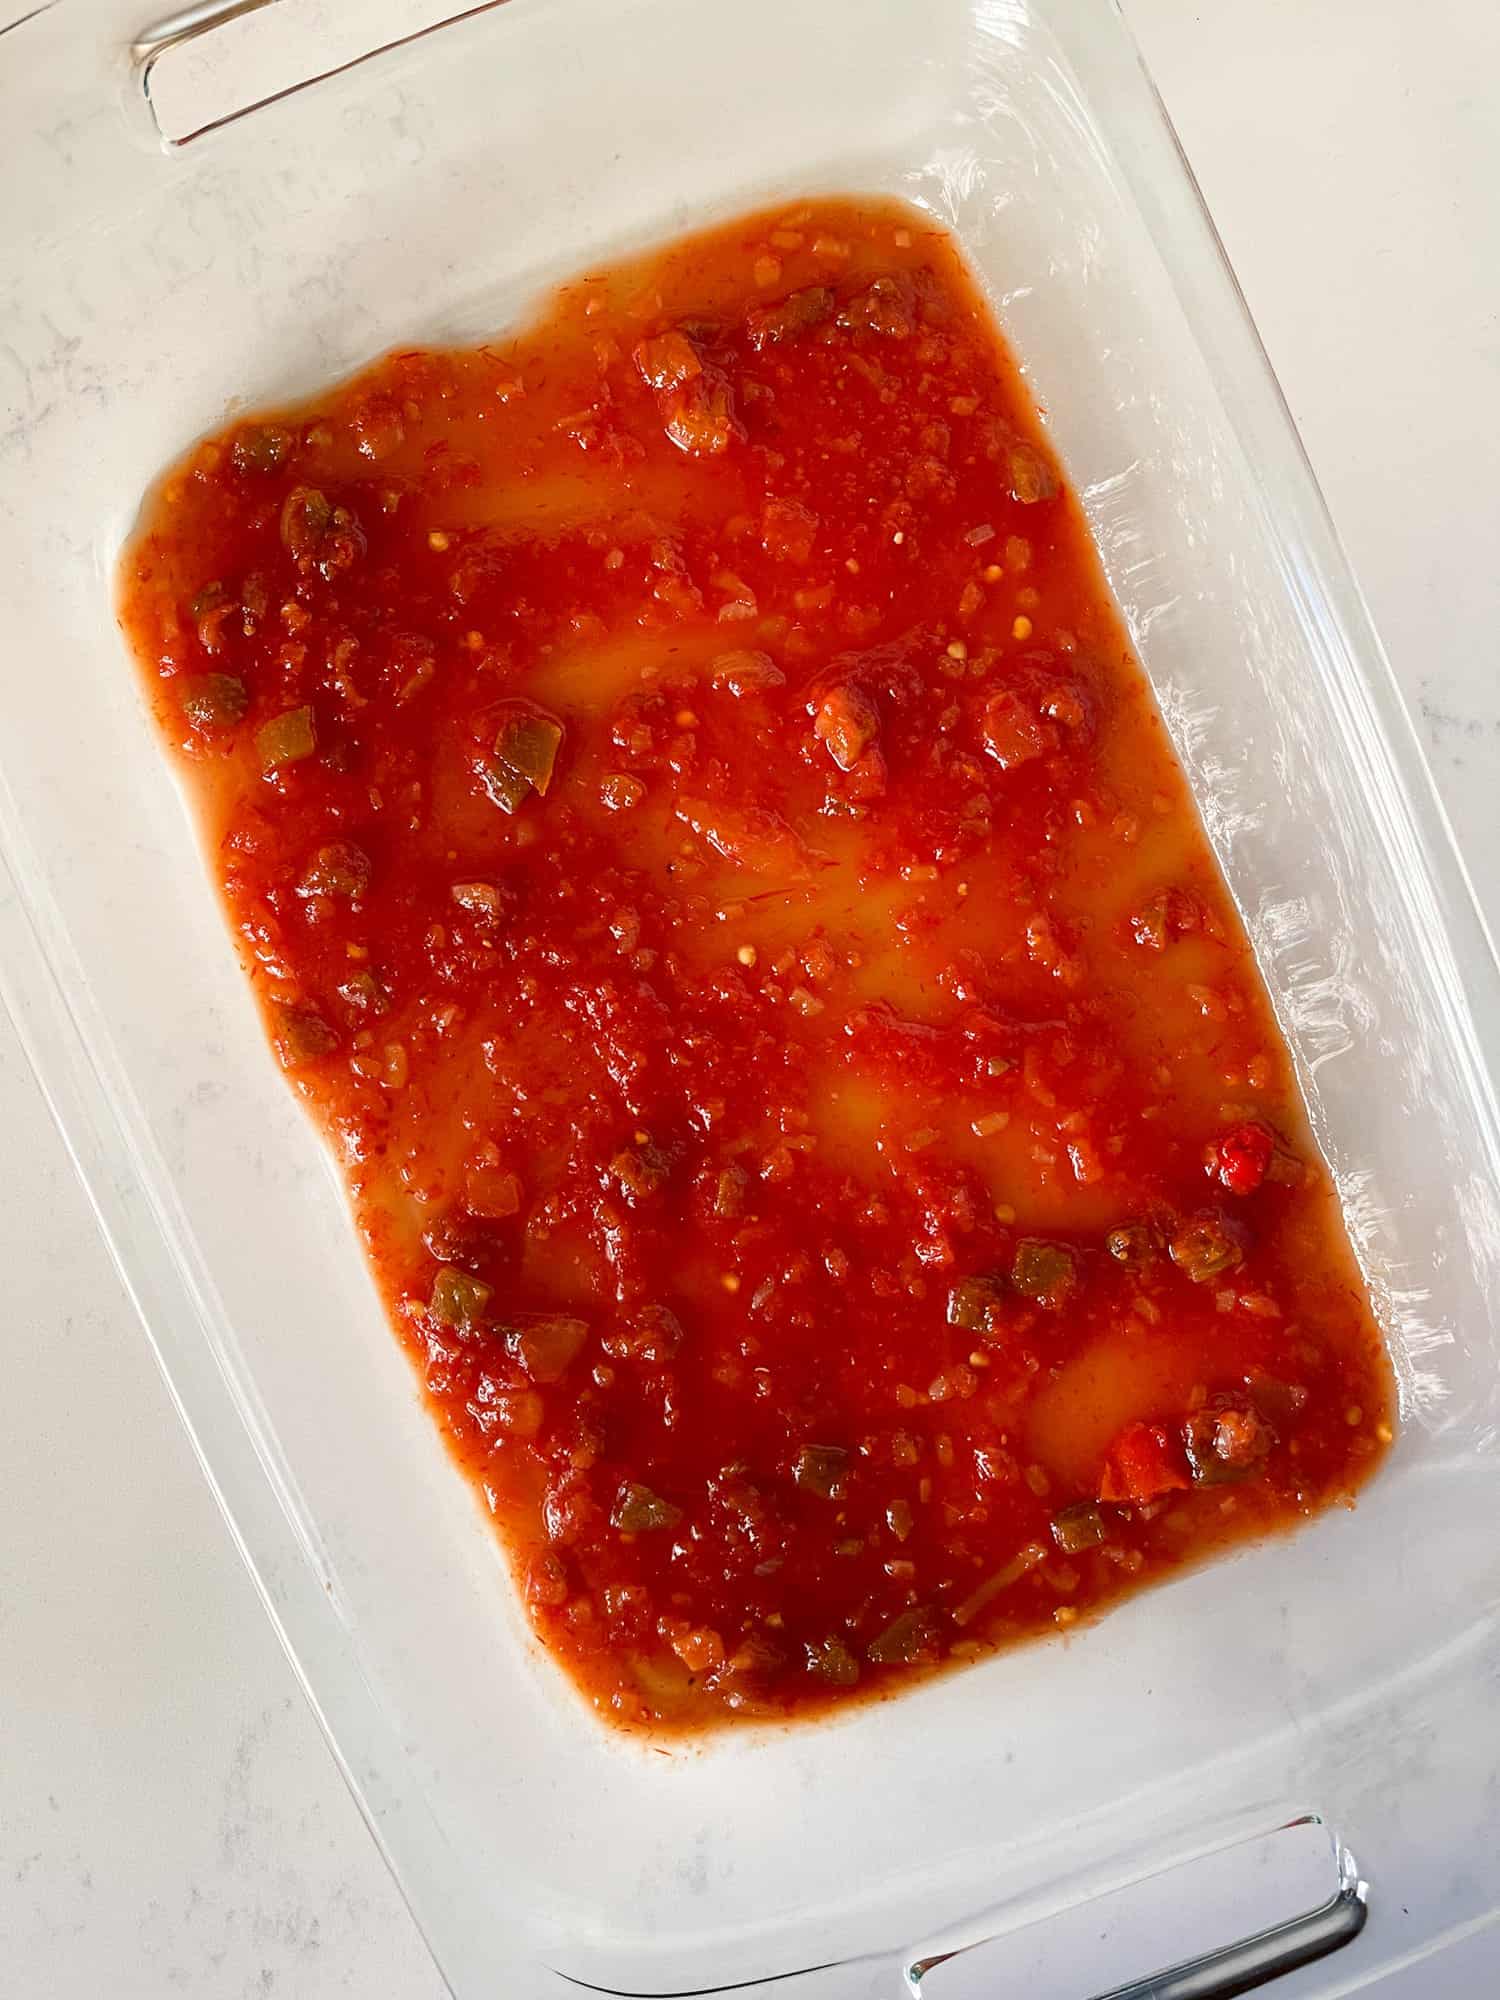 Picante Sauce in casserole dish for Enchiladas